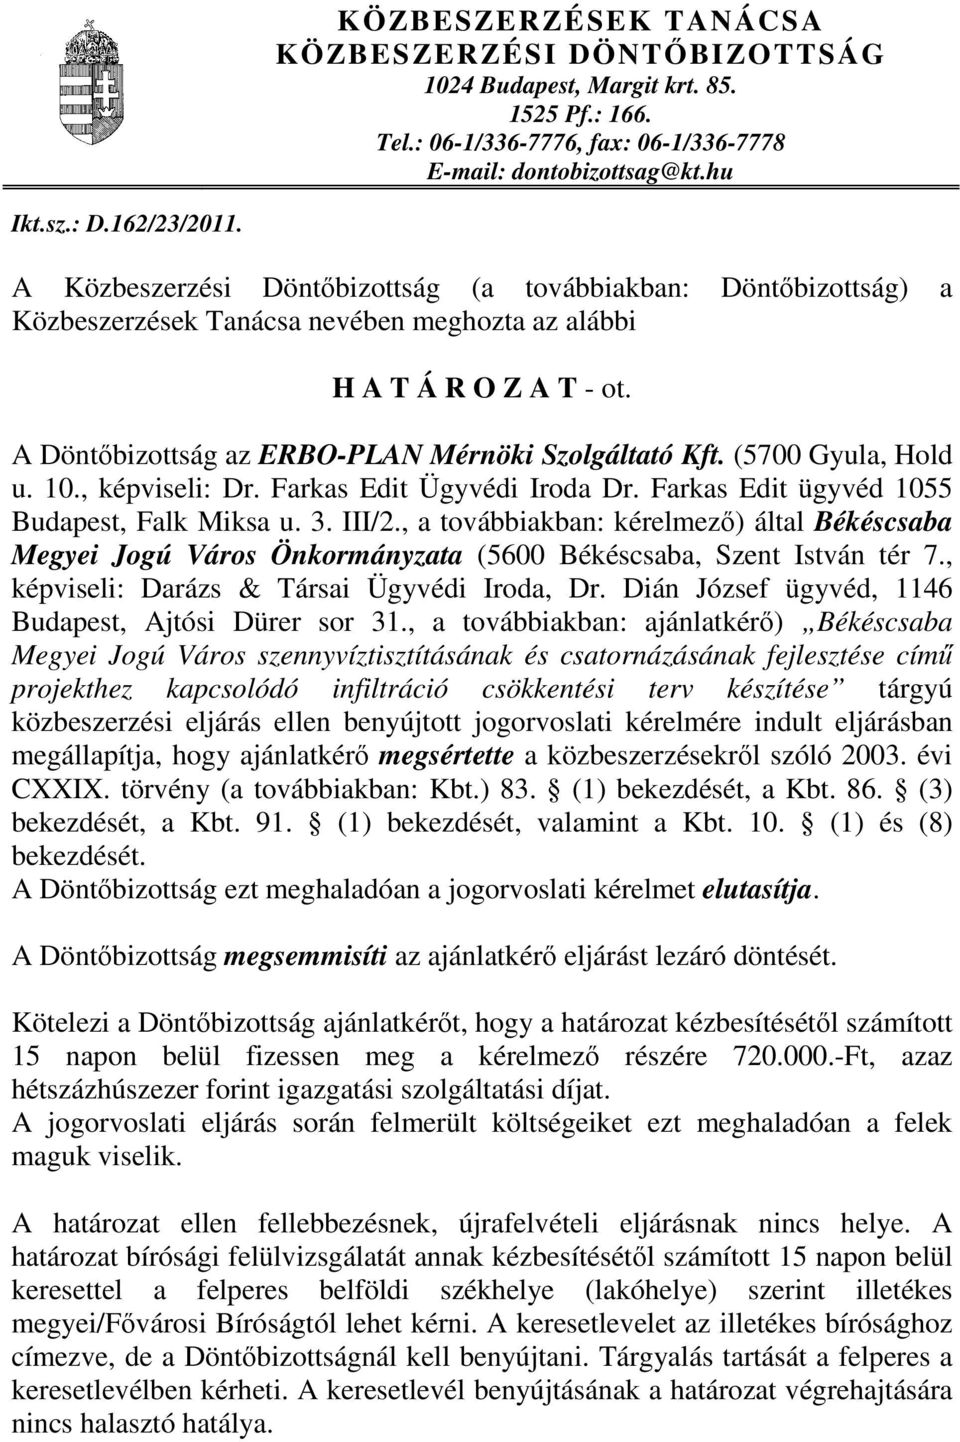 (5700 Gyula, Hold u. 10., képviseli: Dr. Farkas Edit Ügyvédi Iroda Dr. Farkas Edit ügyvéd 1055 Budapest, Falk Miksa u. 3. III/2.